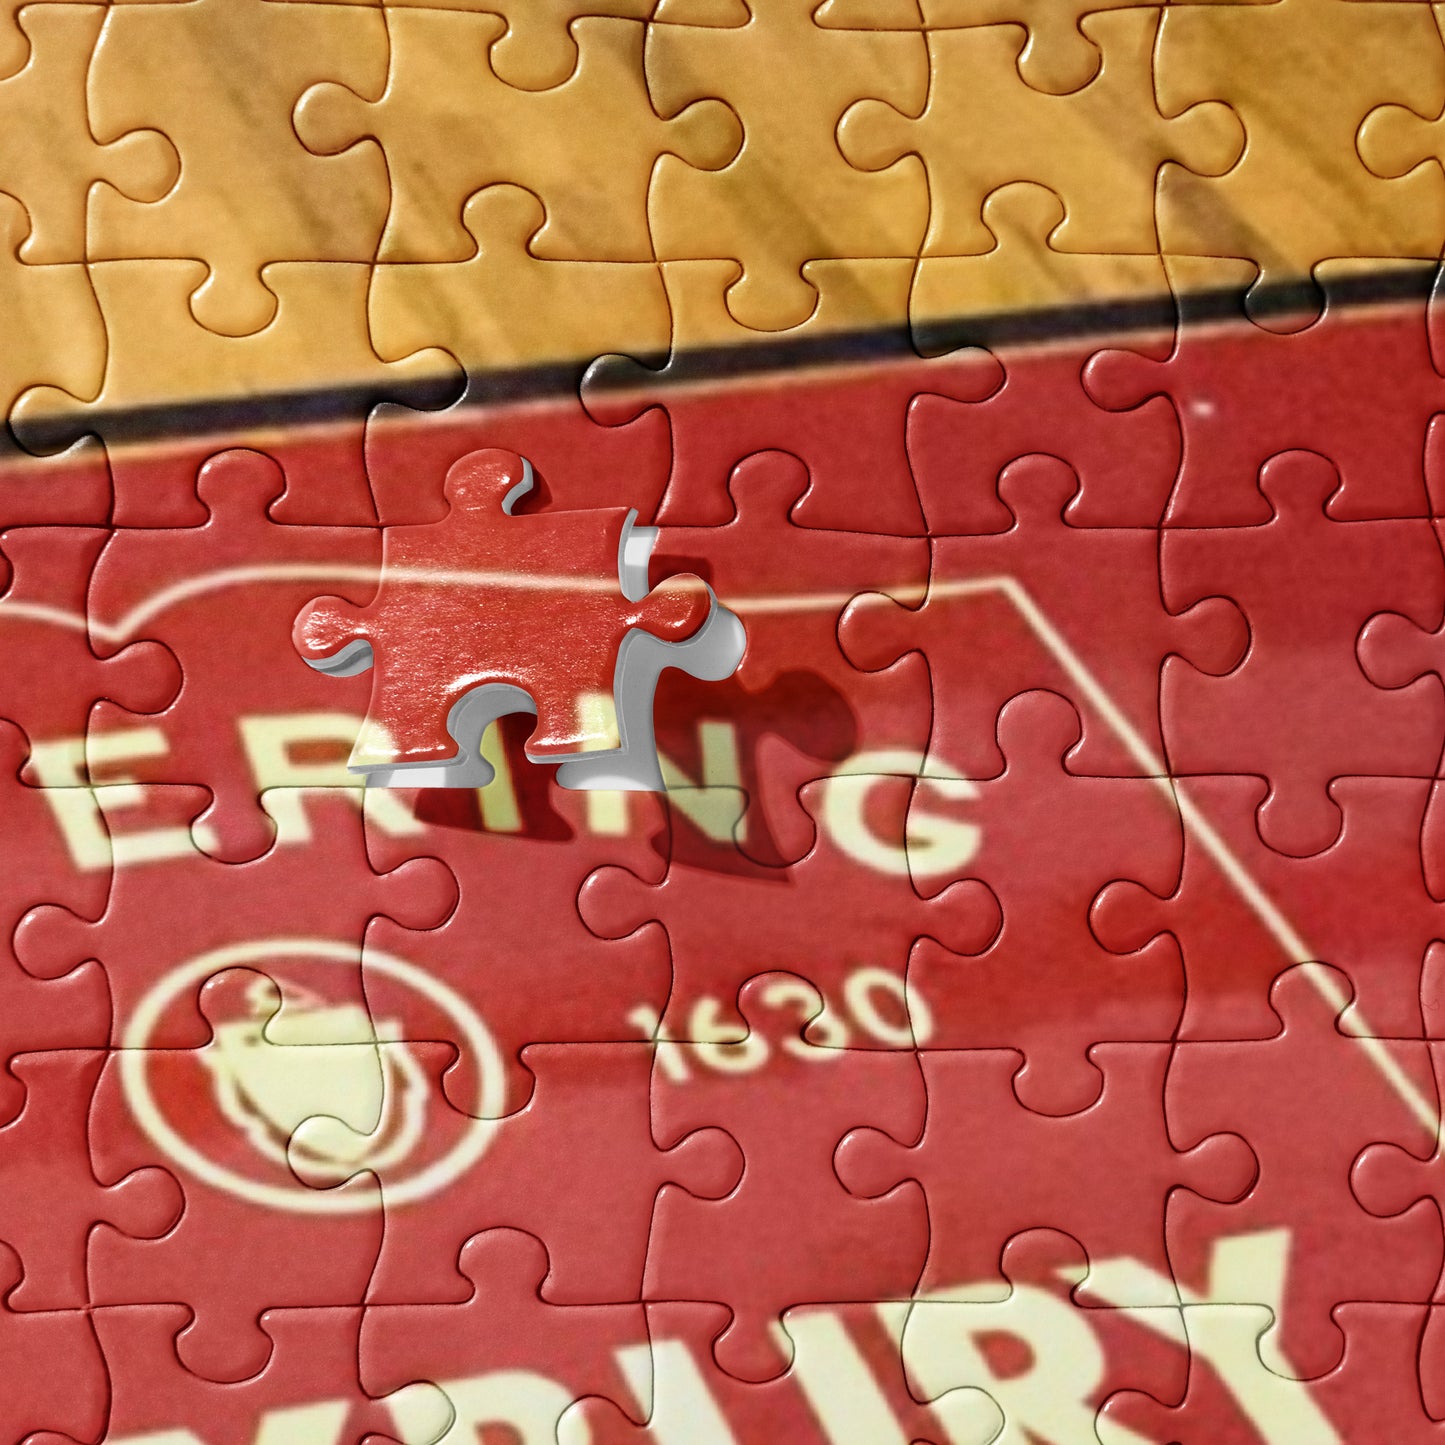 Roxbury Jigsaw puzzle